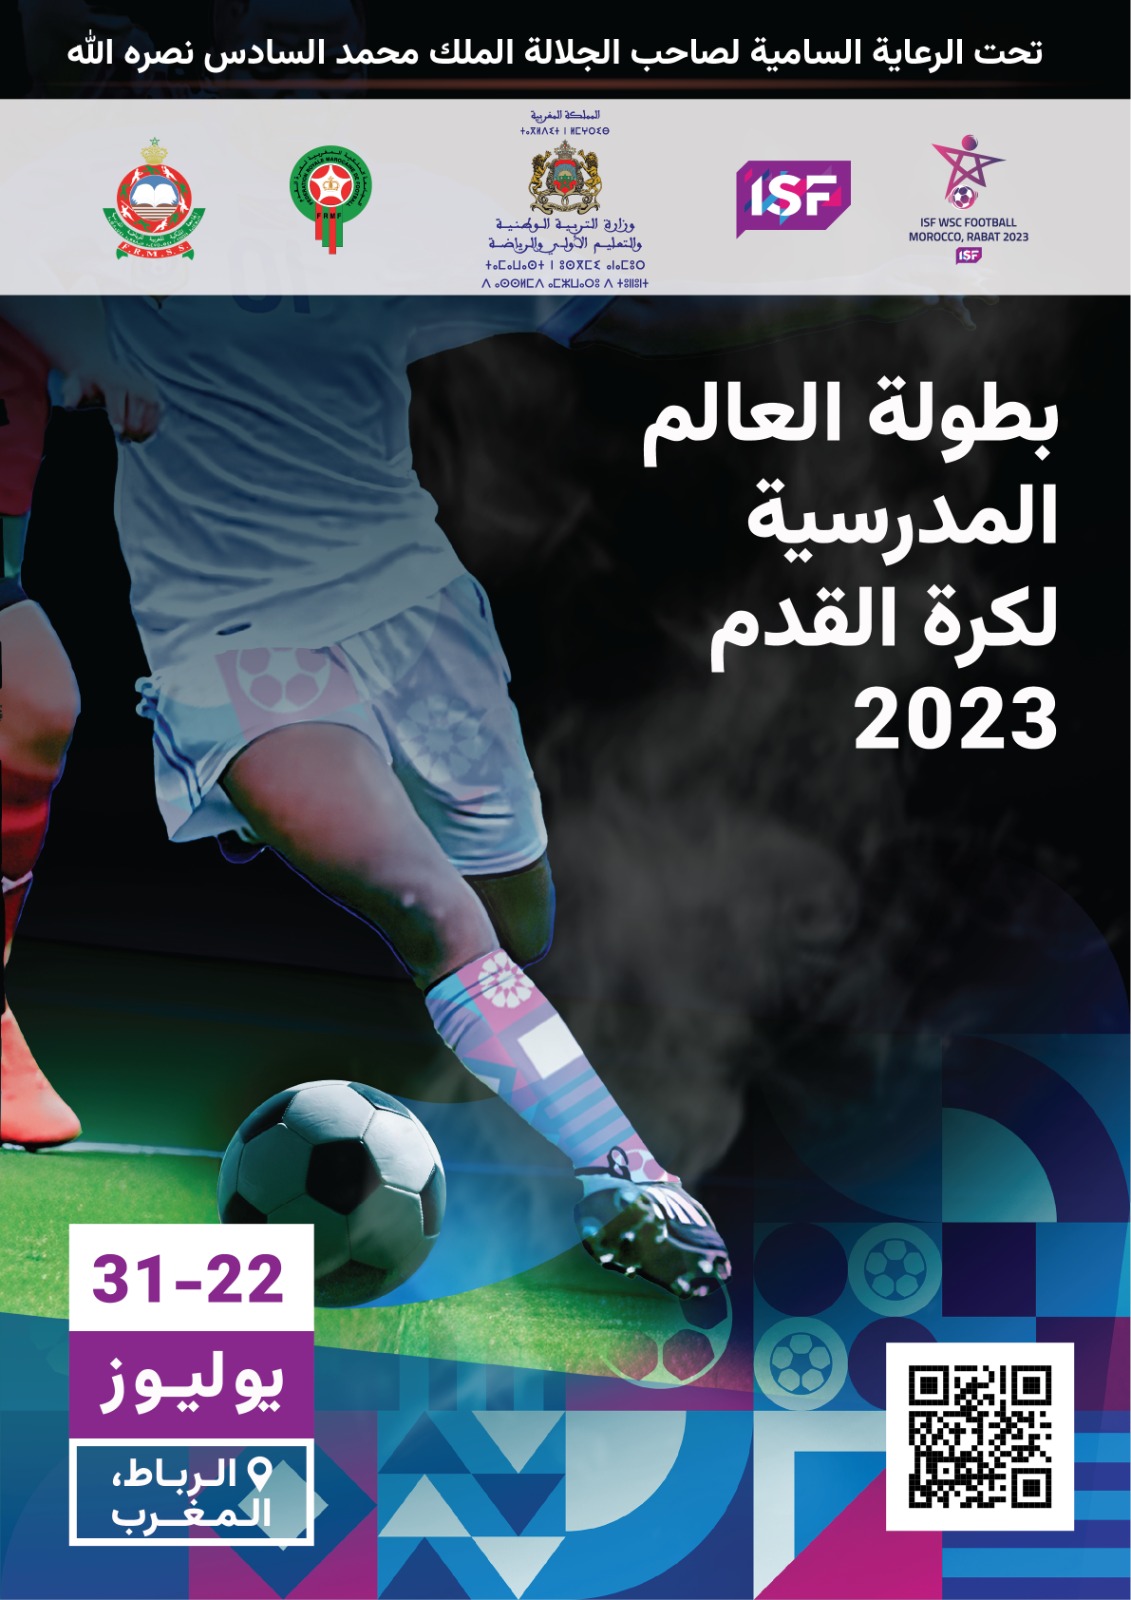 الرباط ستحتضن بطولة العالم المدرسية لكرة القدم، 2023